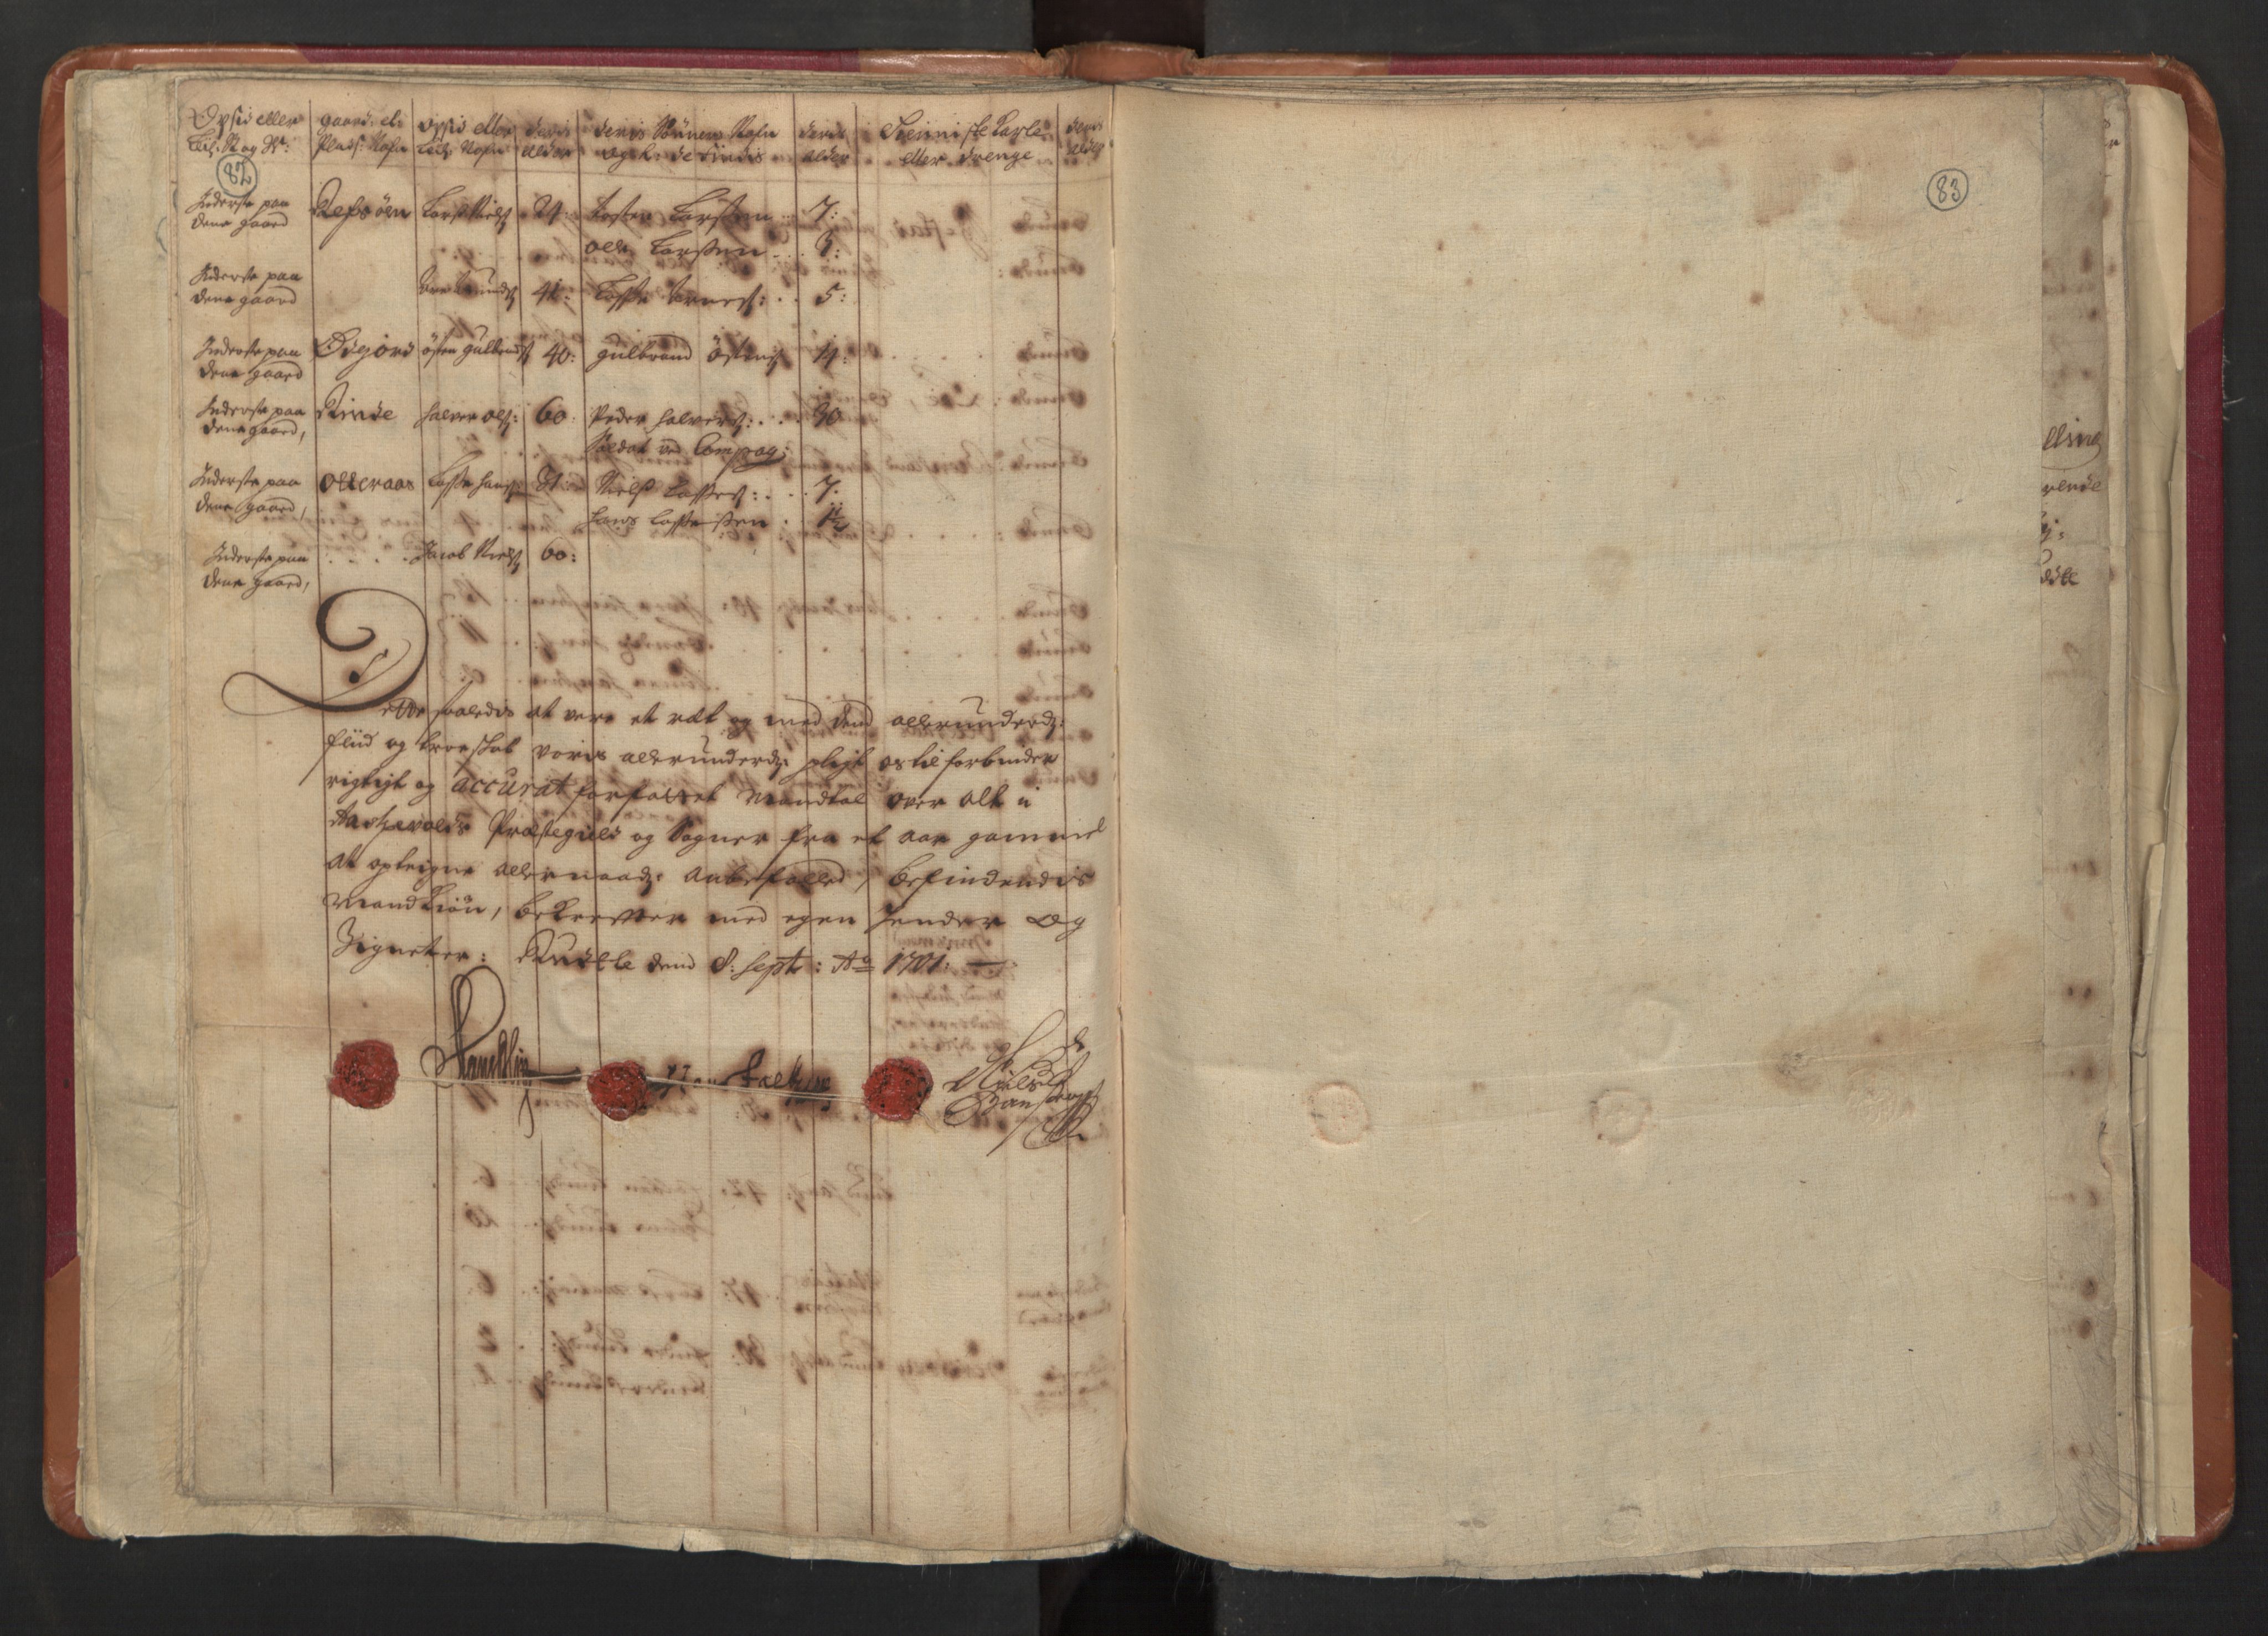 RA, Manntallet 1701, nr. 8: Ytre Sogn fogderi og Indre Sogn fogderi, 1701, s. 82-83